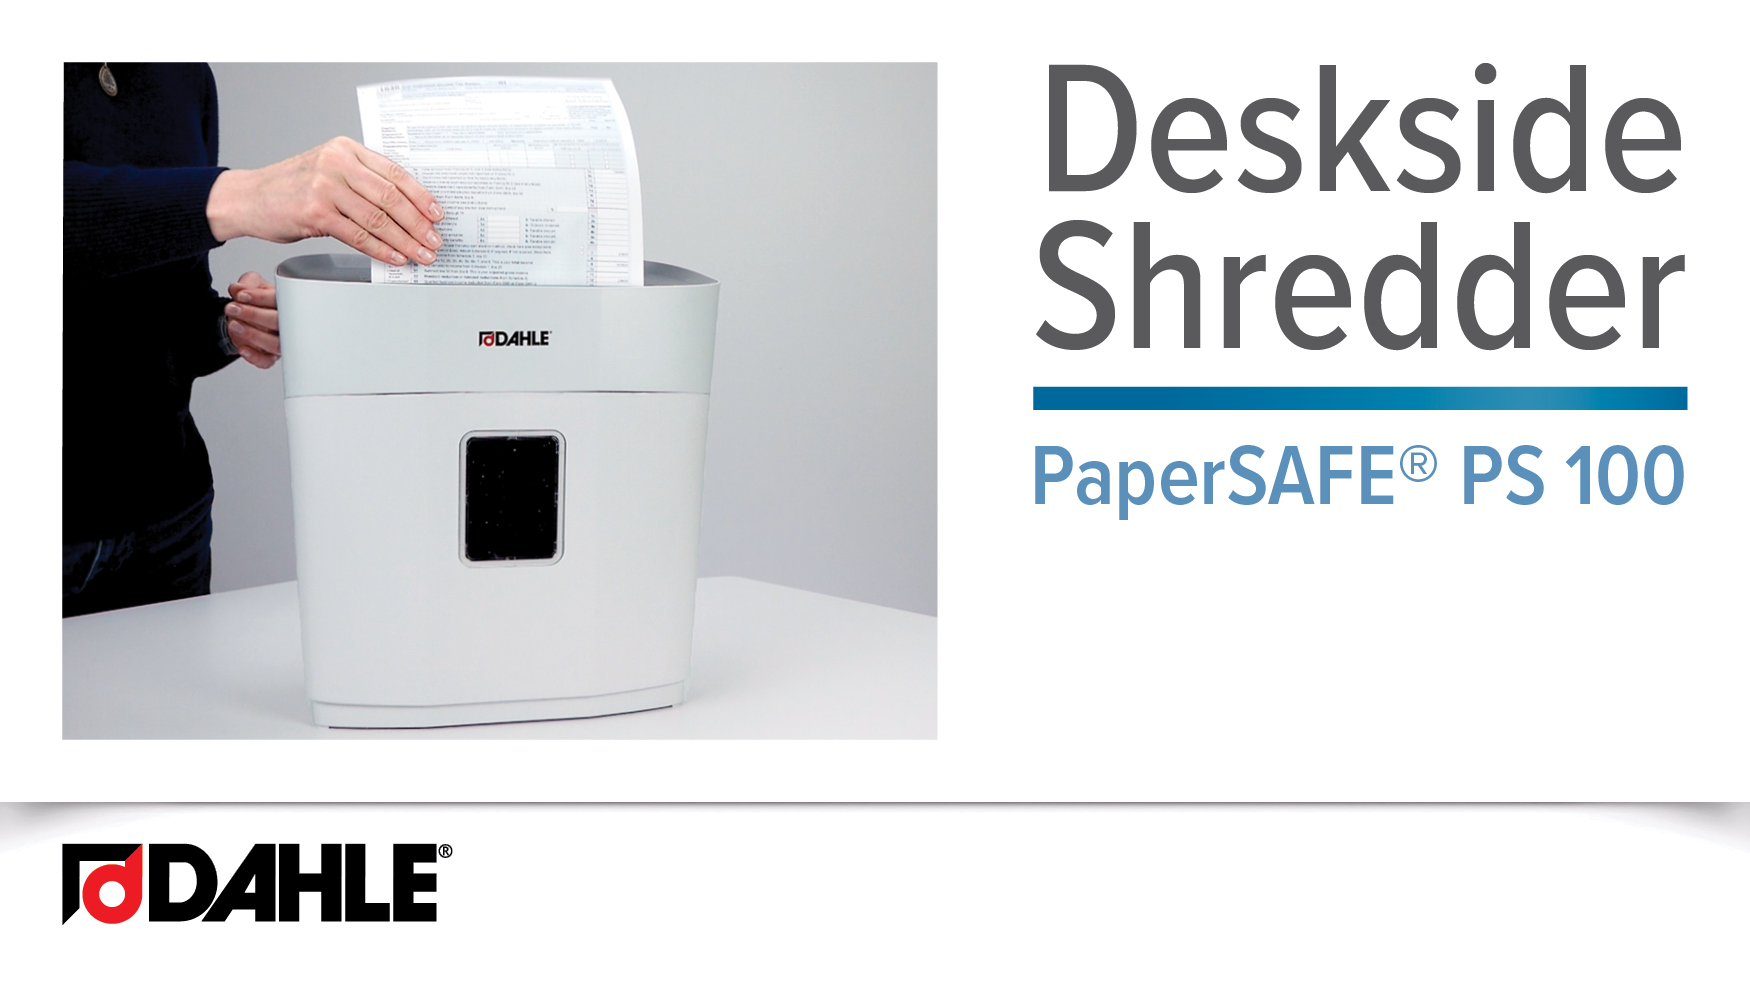 <big><strong>PaperSAFE® PS 100</strong></big><br> Deskside Shredder